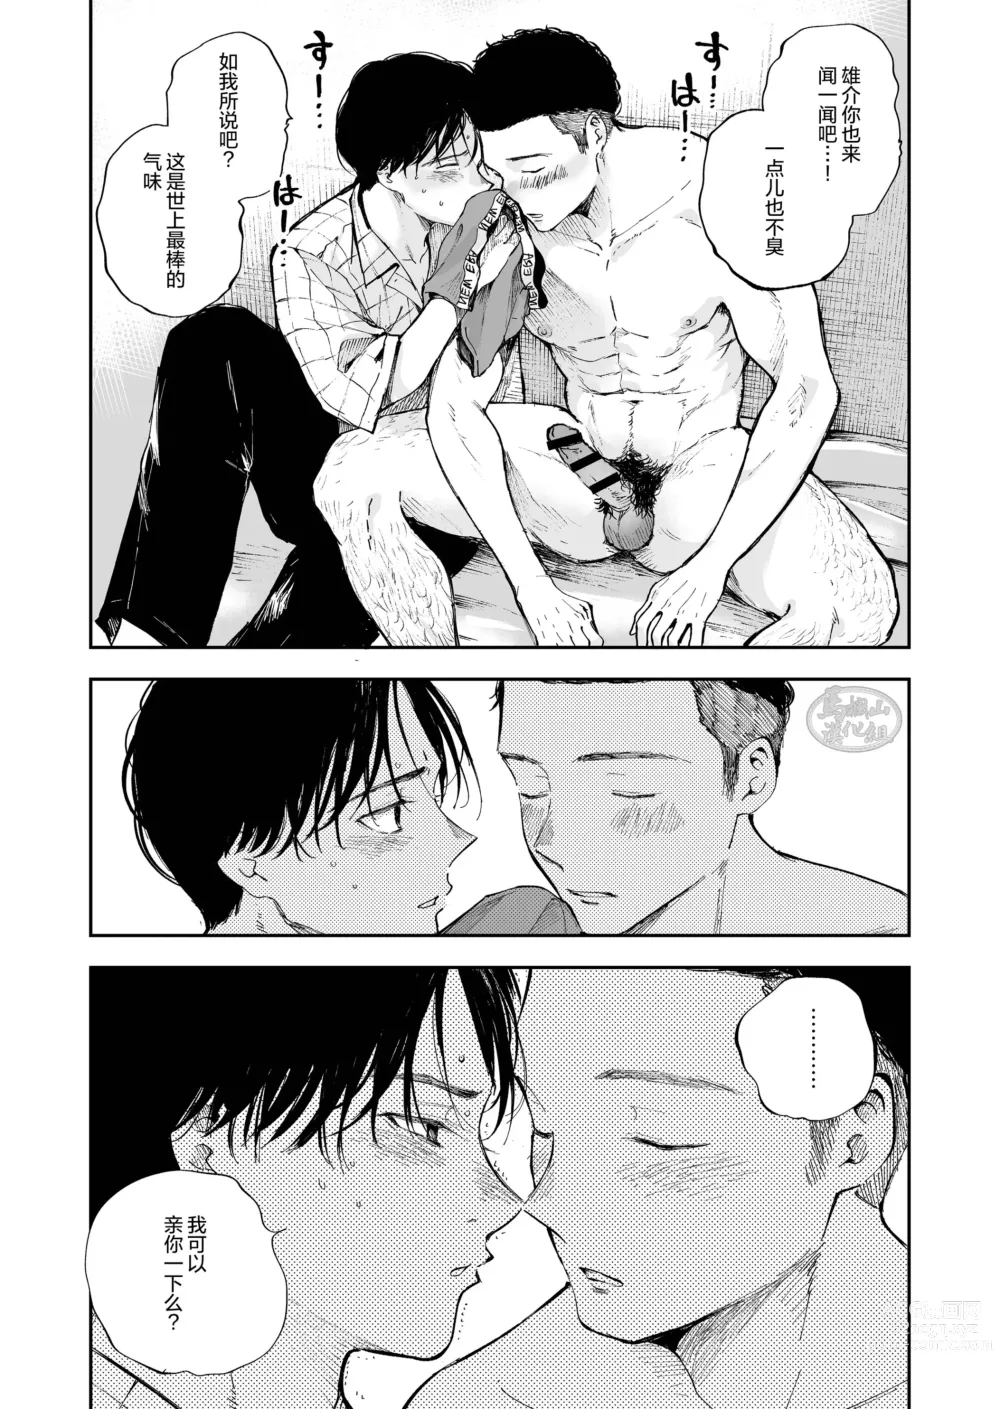 Page 24 of manga キミは ともだち